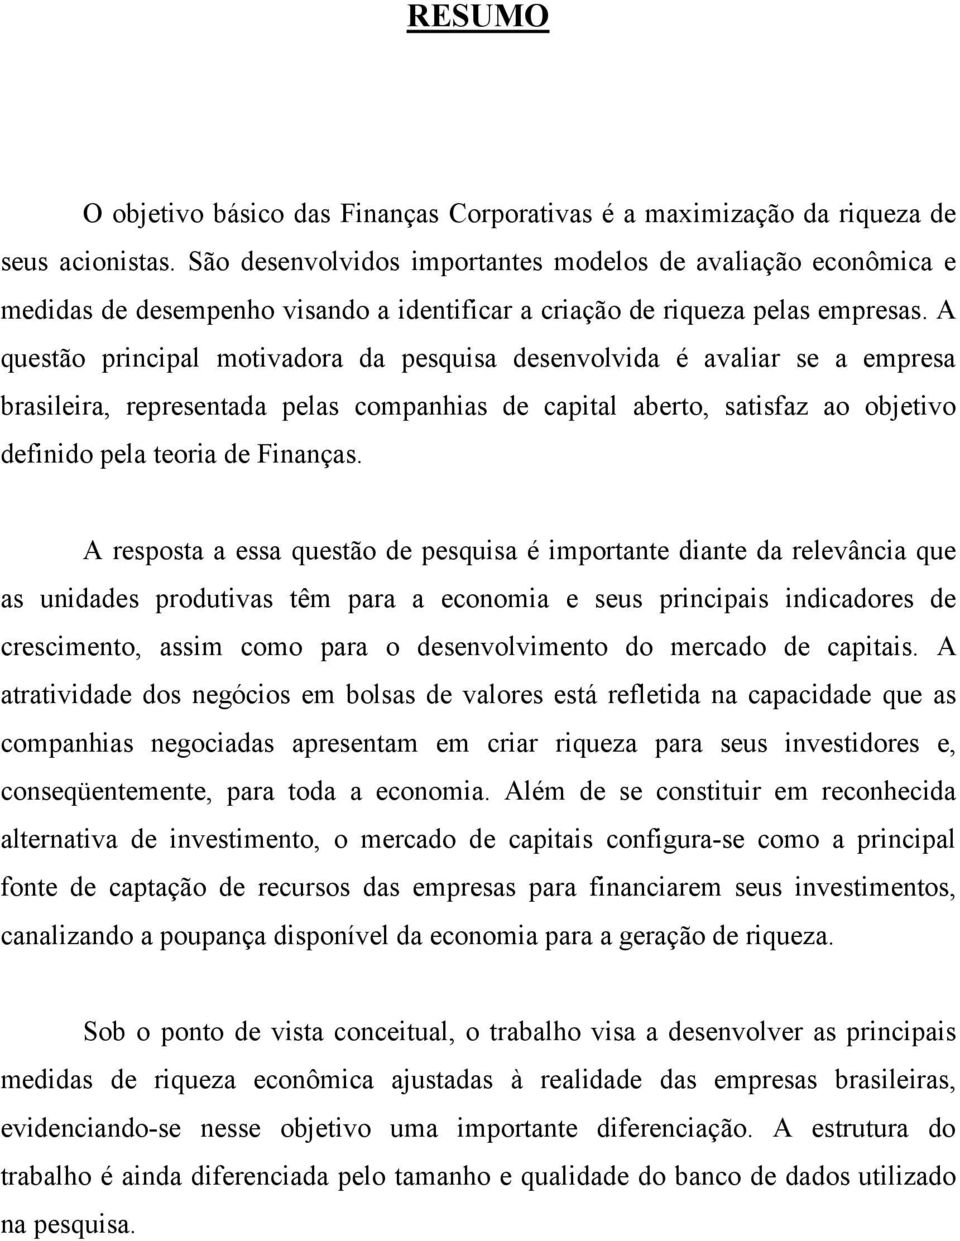 A questão principal motivadora da pesquisa desenvolvida é avaliar se a empresa brasileira, representada pelas companhias de capital aberto, satisfaz ao objetivo definido pela teoria de Finanças.